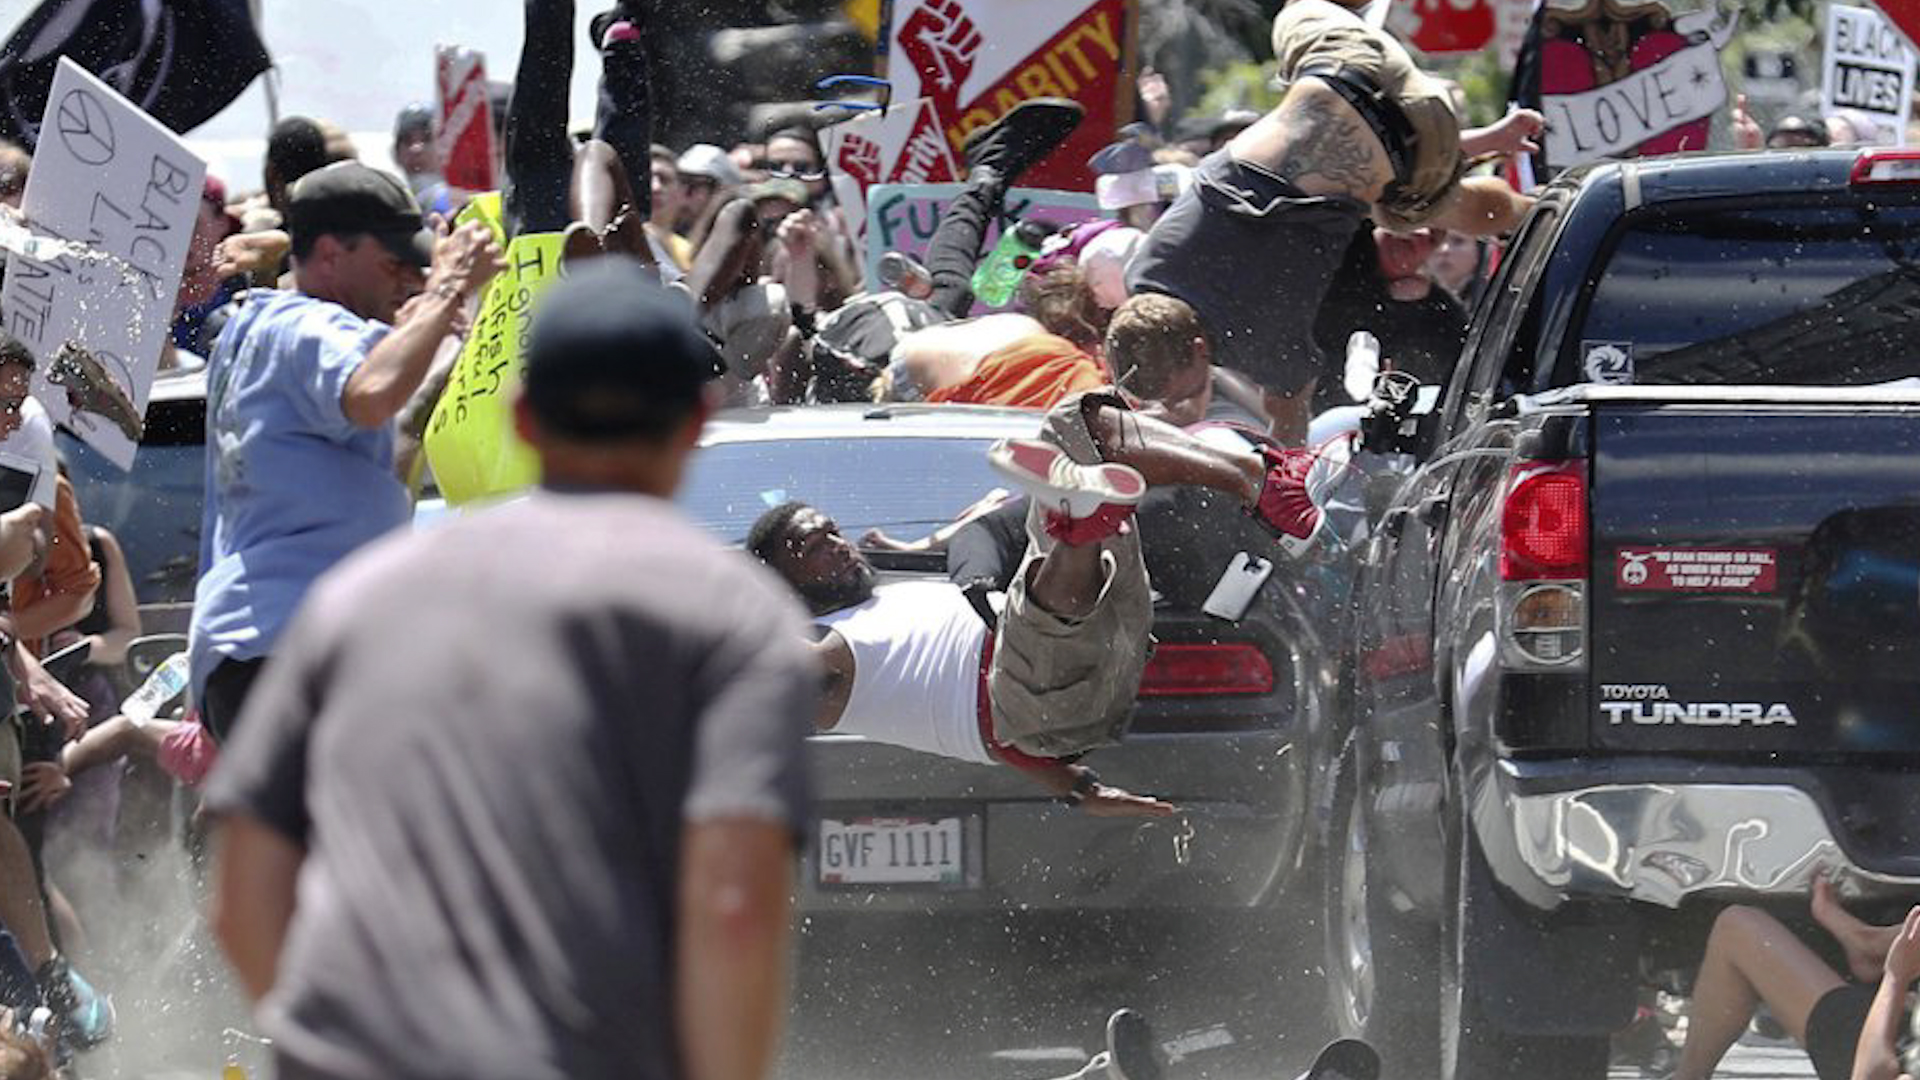 Tres muertos durante la jornada de caos desatada en Charlottesville por una manifestación racista